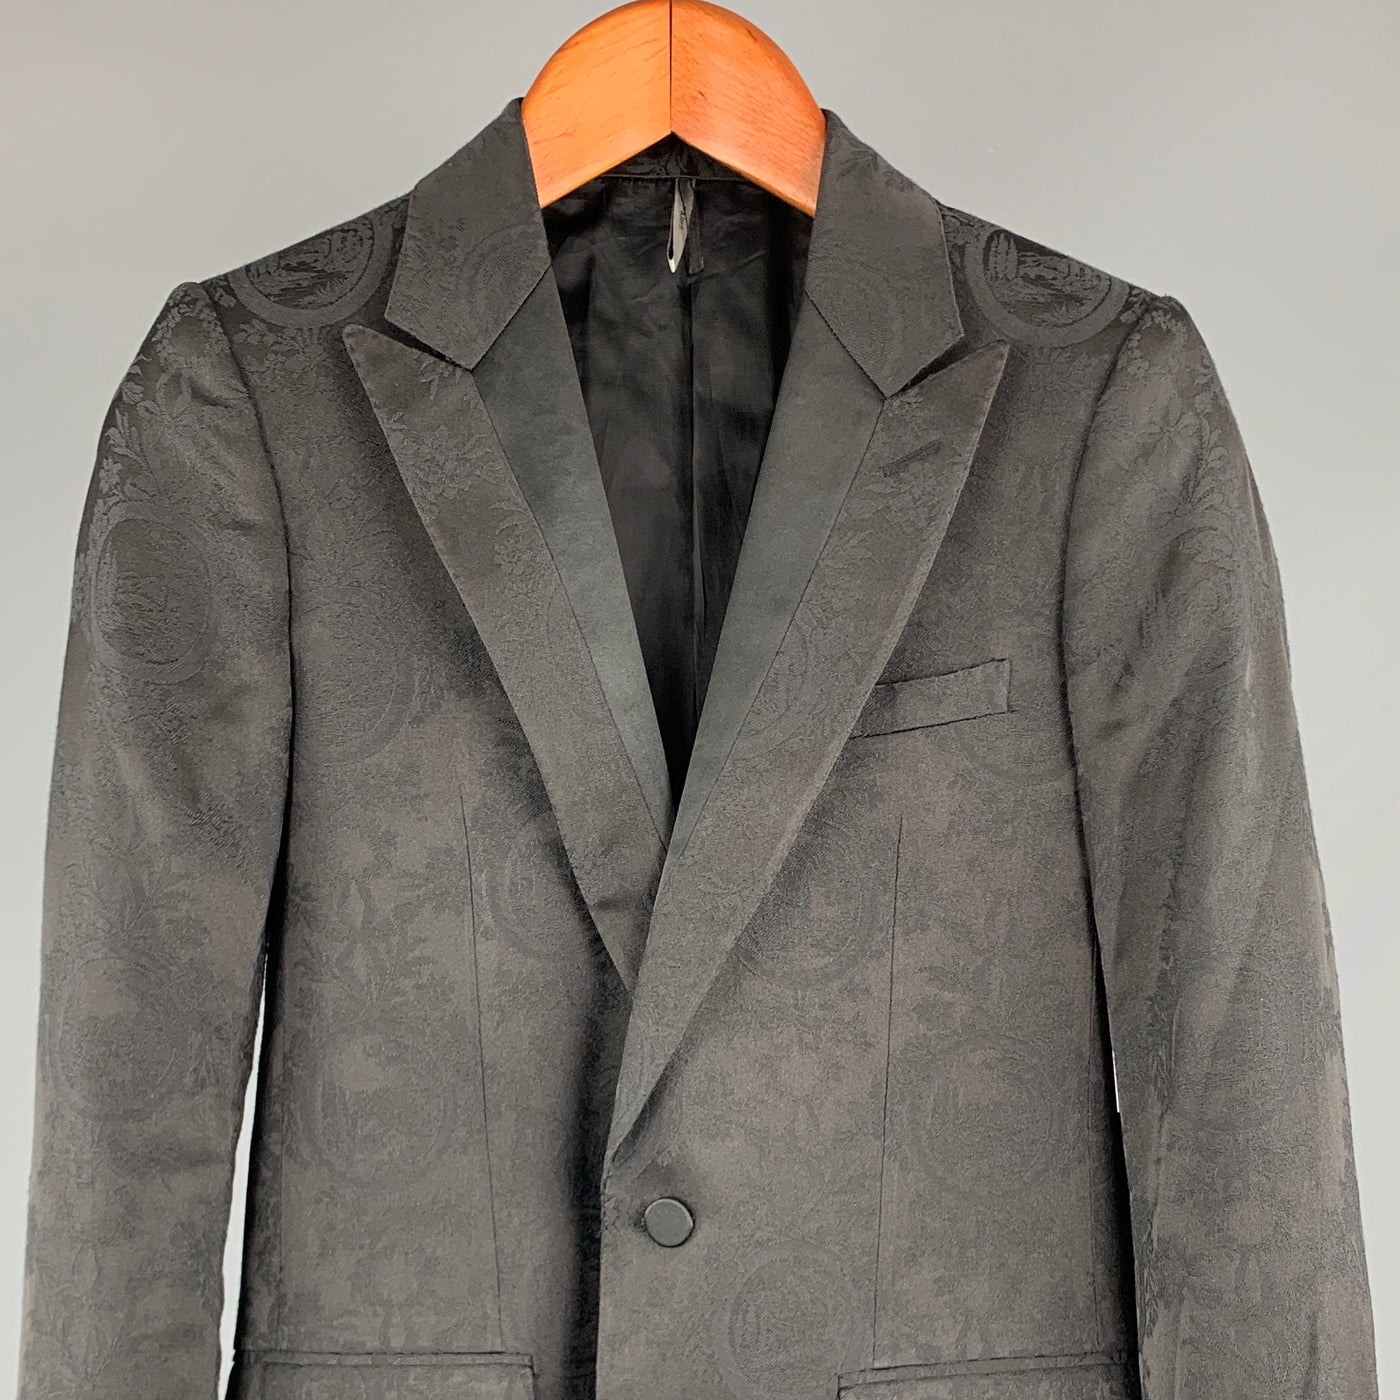 DIOR HOMME Size 34 Black Jacquard Polyester / Viscose Sport Coat